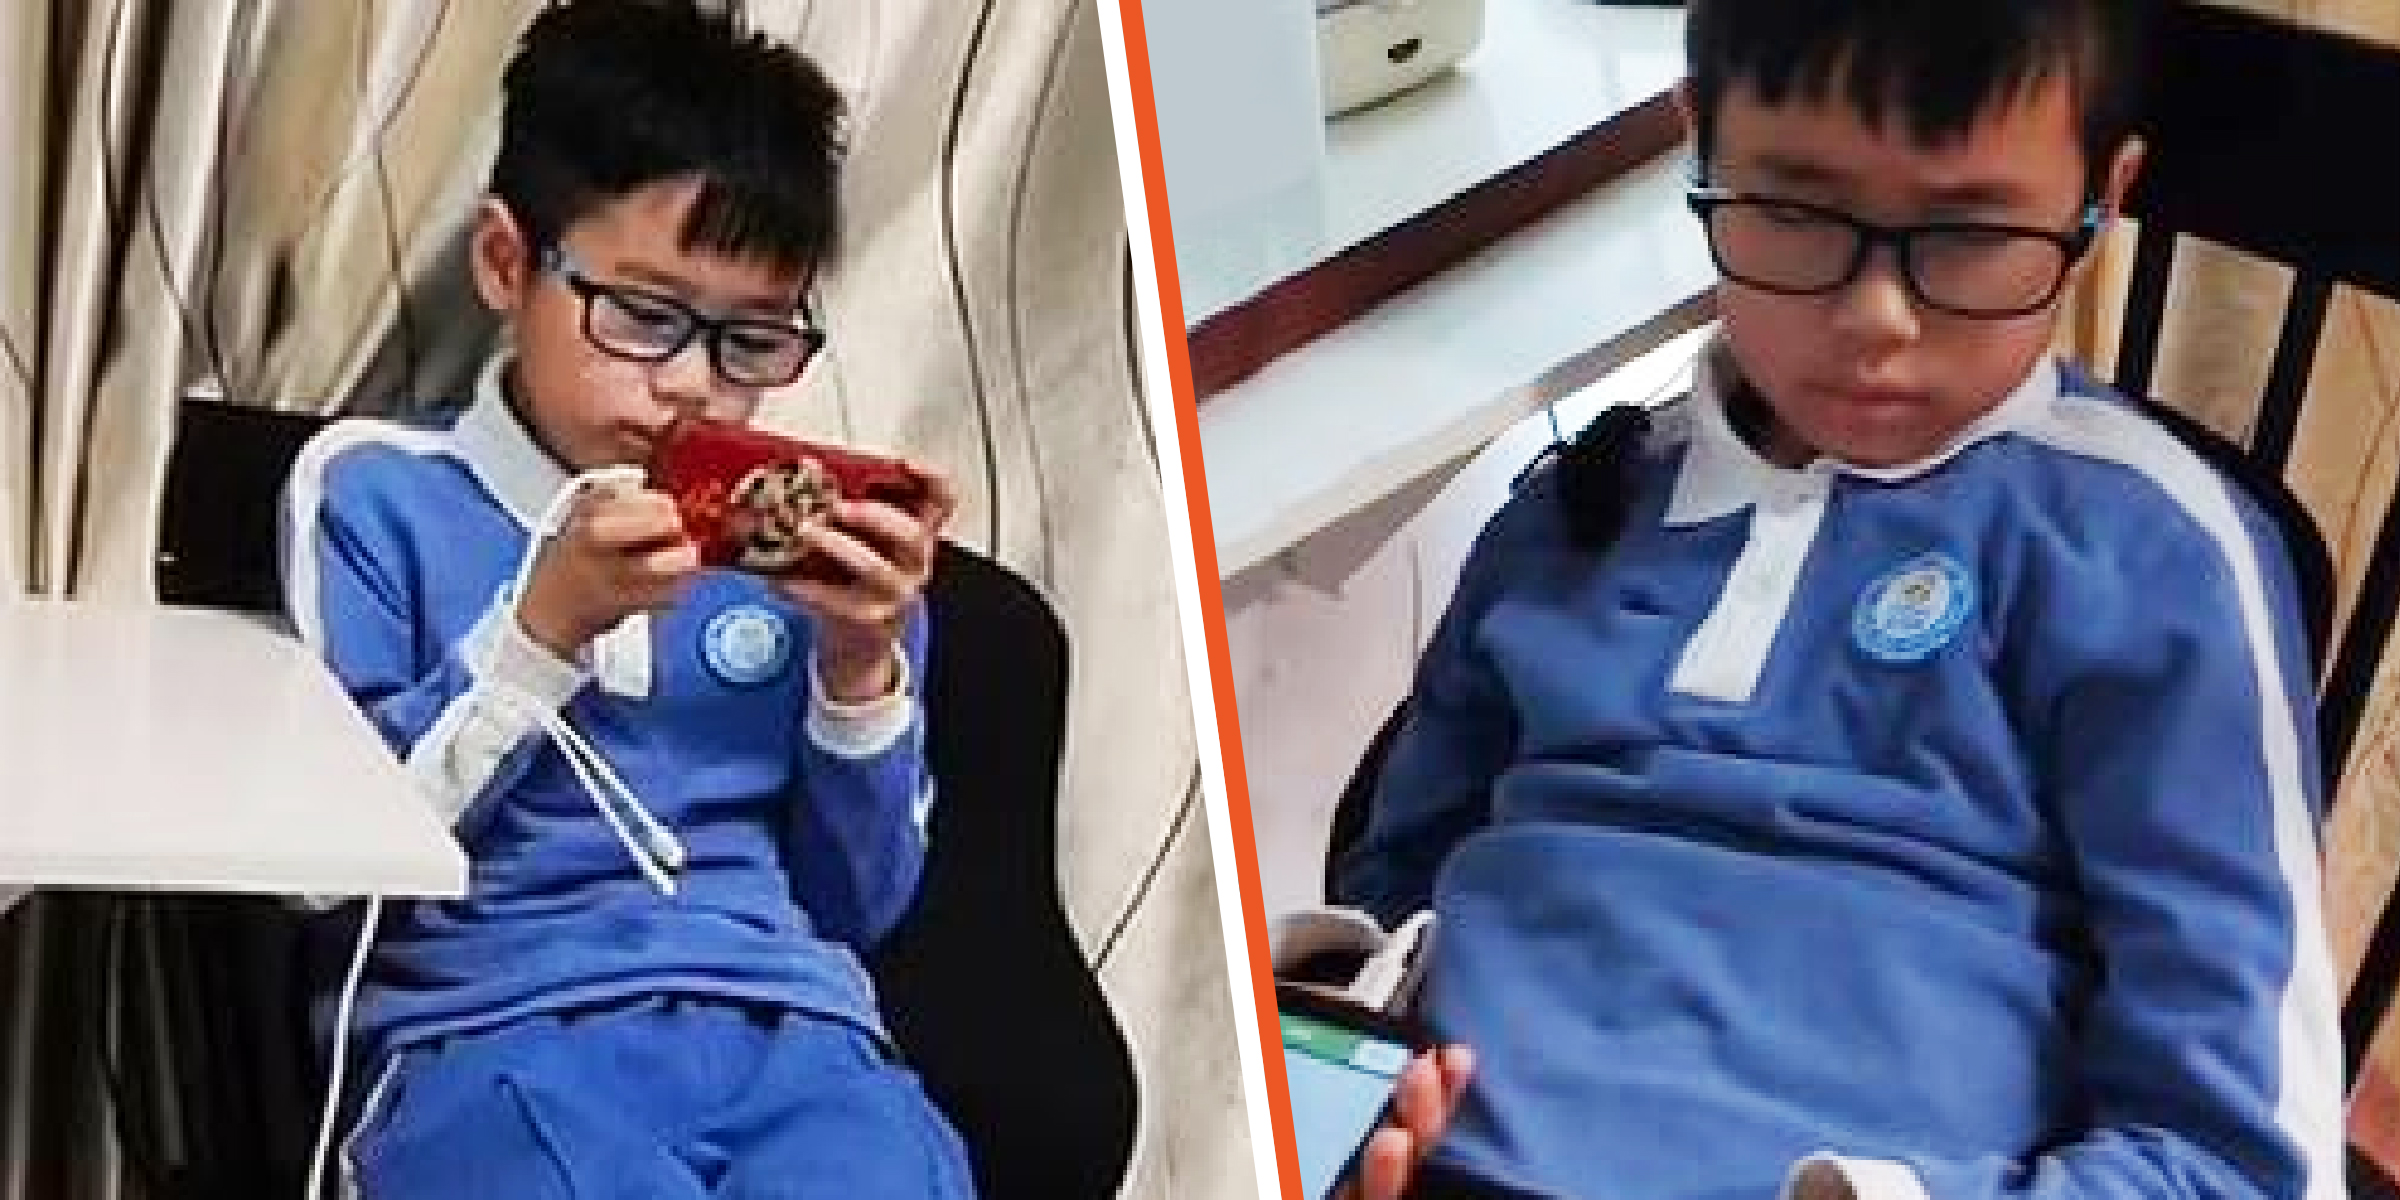 Der 11-jährige chinesische Junge | Quelle: facebook.com/DailyMail